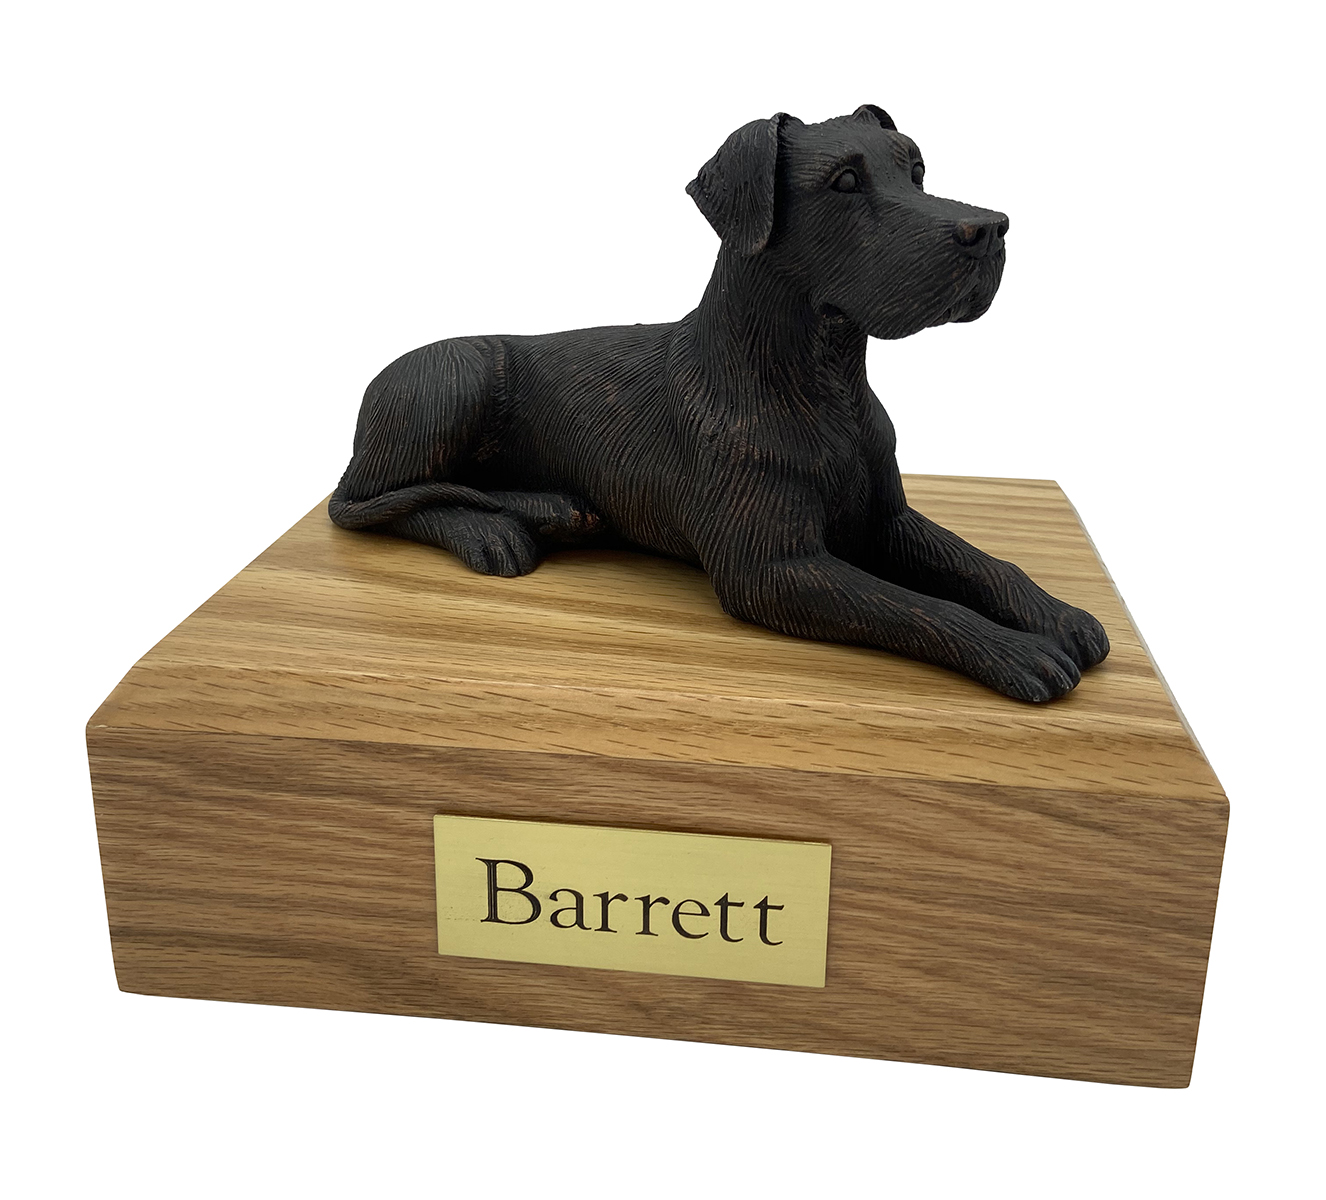 Dog, Great Dane, Bronze (Ears Down) - Figurine Urn